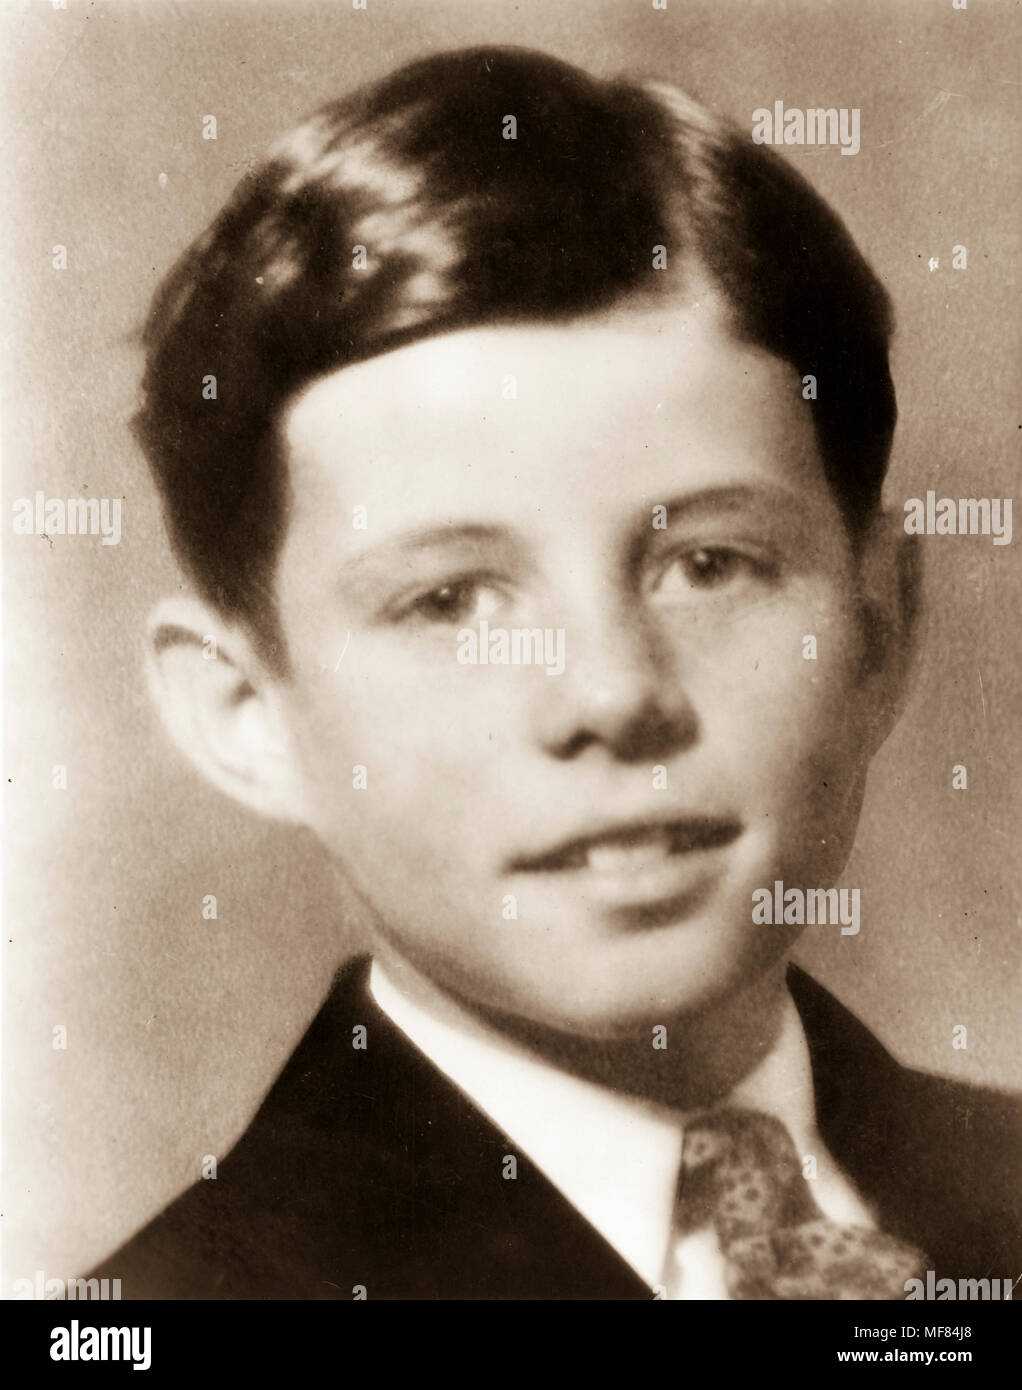 PC6 c. 1926/1927 Portrait de John F. Kennedy. Le président John F. Kennedy comme un garçon. Photos : John F. Kennedy Presidential Library and Museum, Boston. Banque D'Images